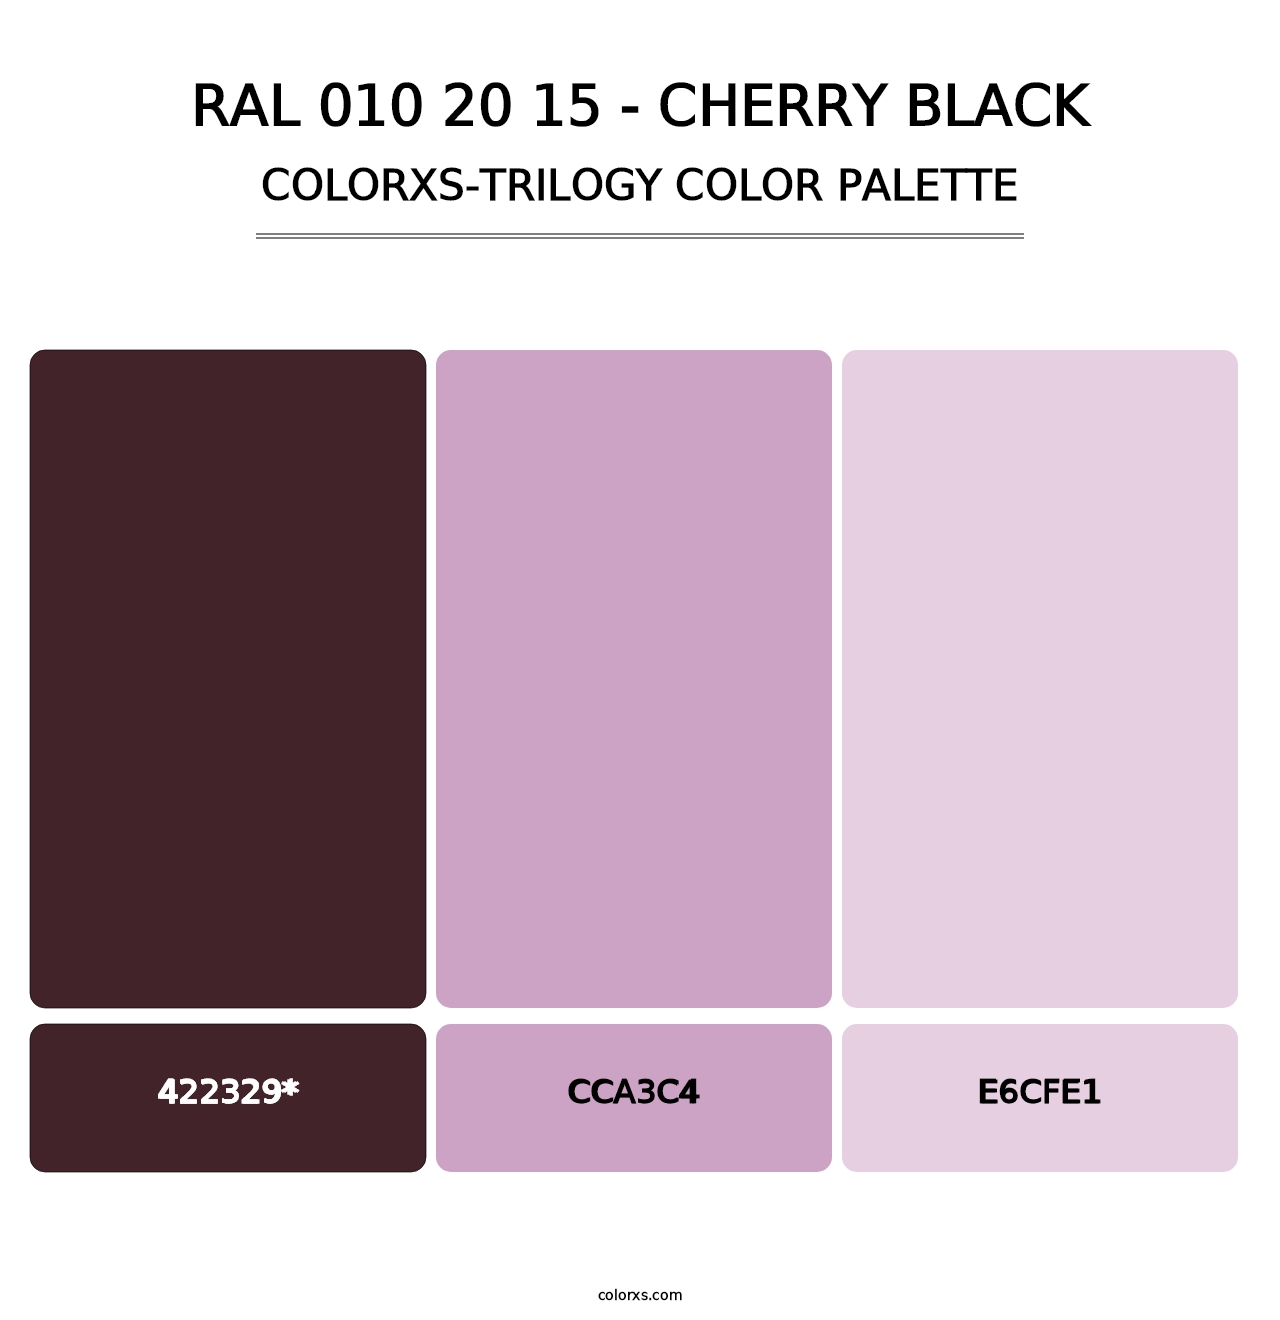 RAL 010 20 15 - Cherry Black - Colorxs Trilogy Palette